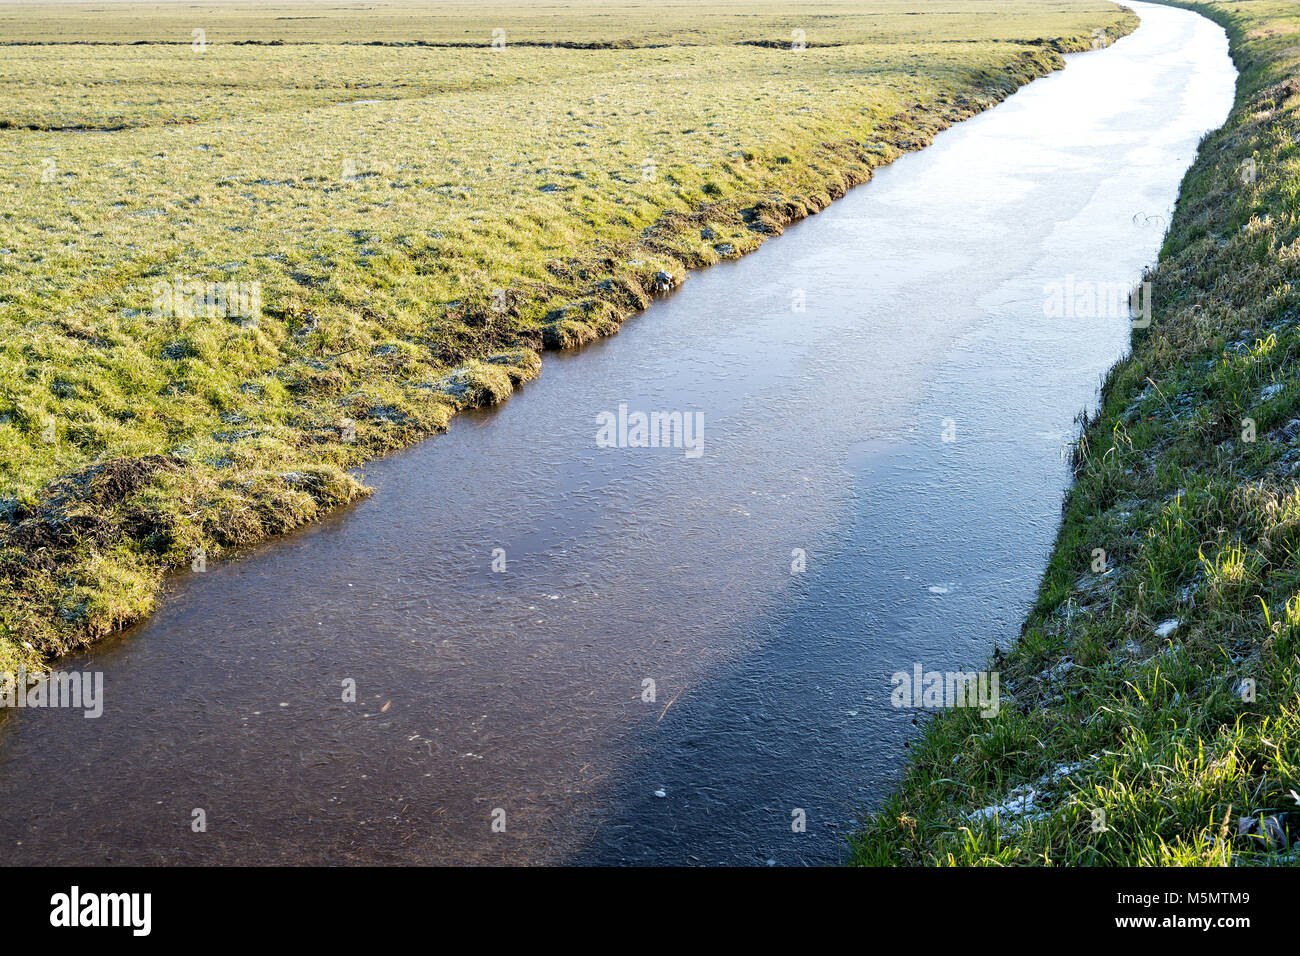 Halb erfroren Entwässerungskanal in Niederländisch Flächeninhalt Landschaft Stockfoto